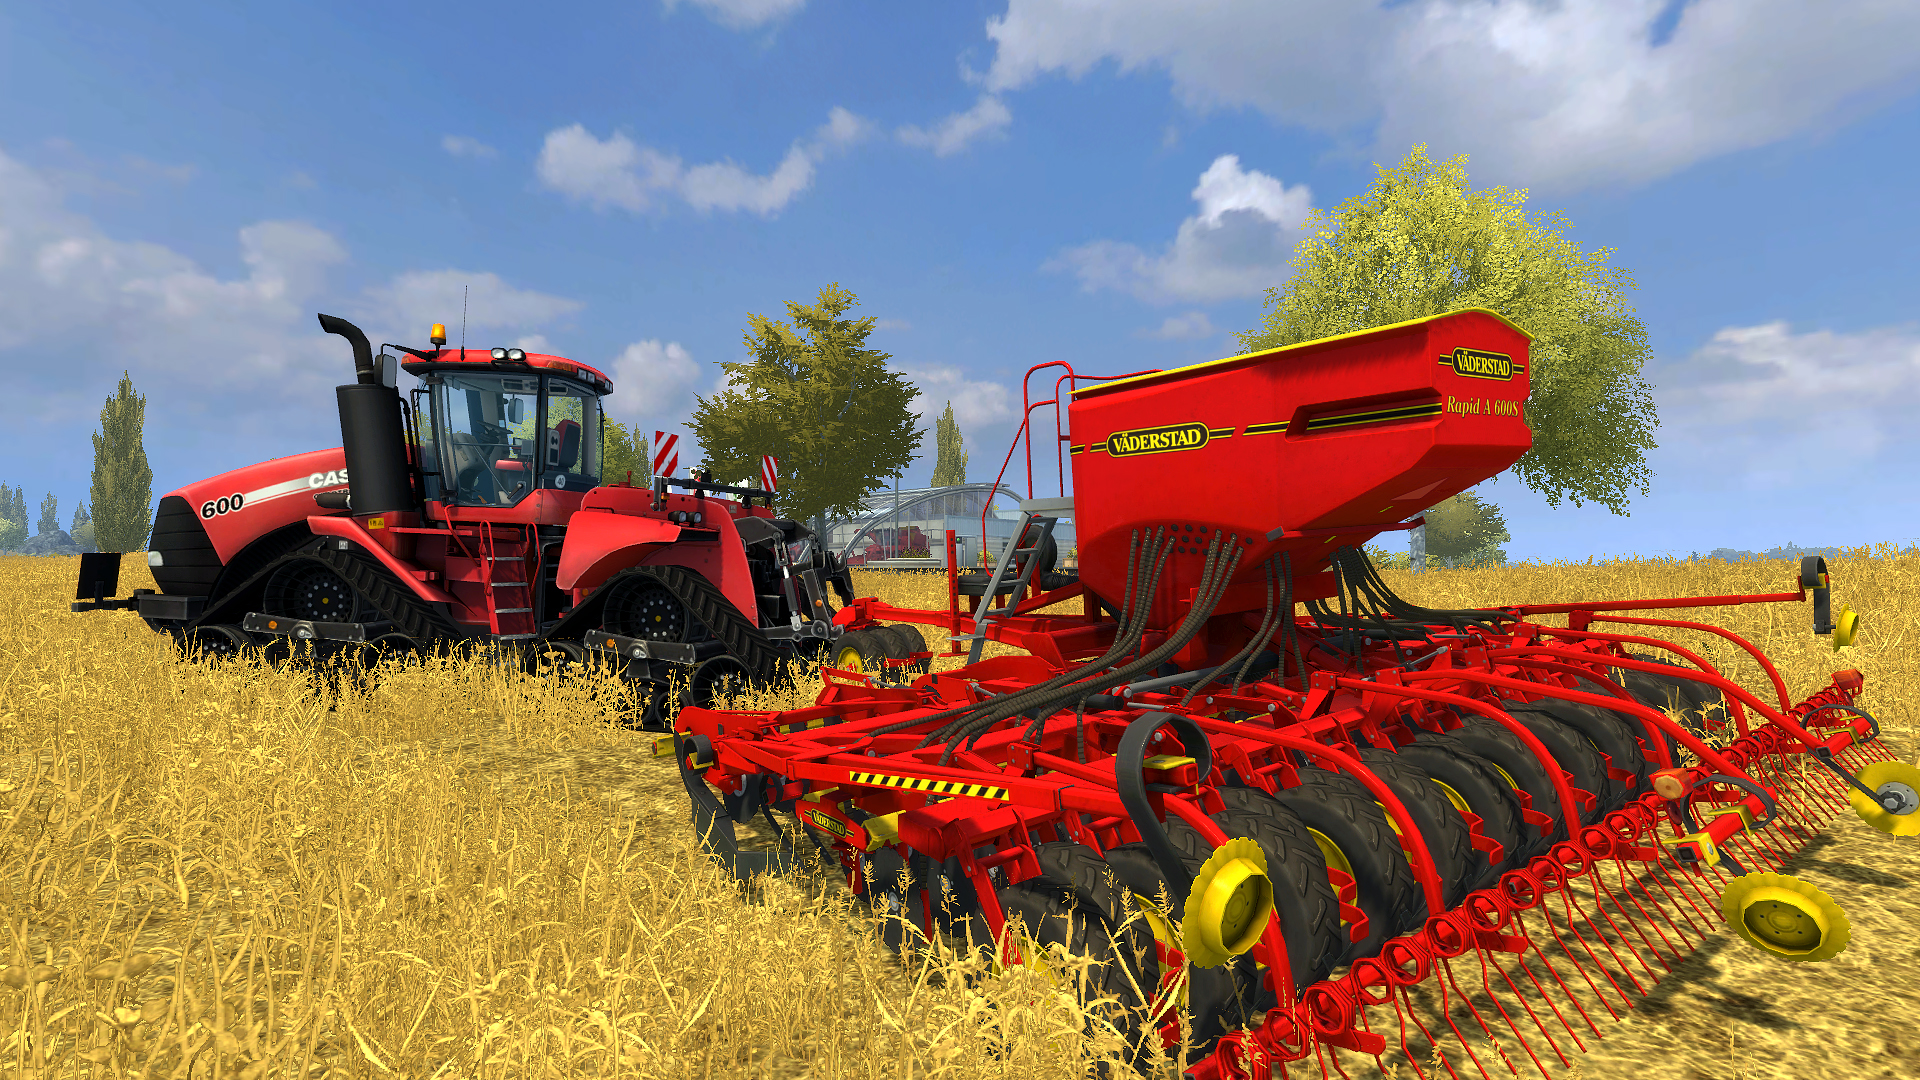 Farming Simulator 2013 - Väderstad DLC Steam CD Key 3.38$